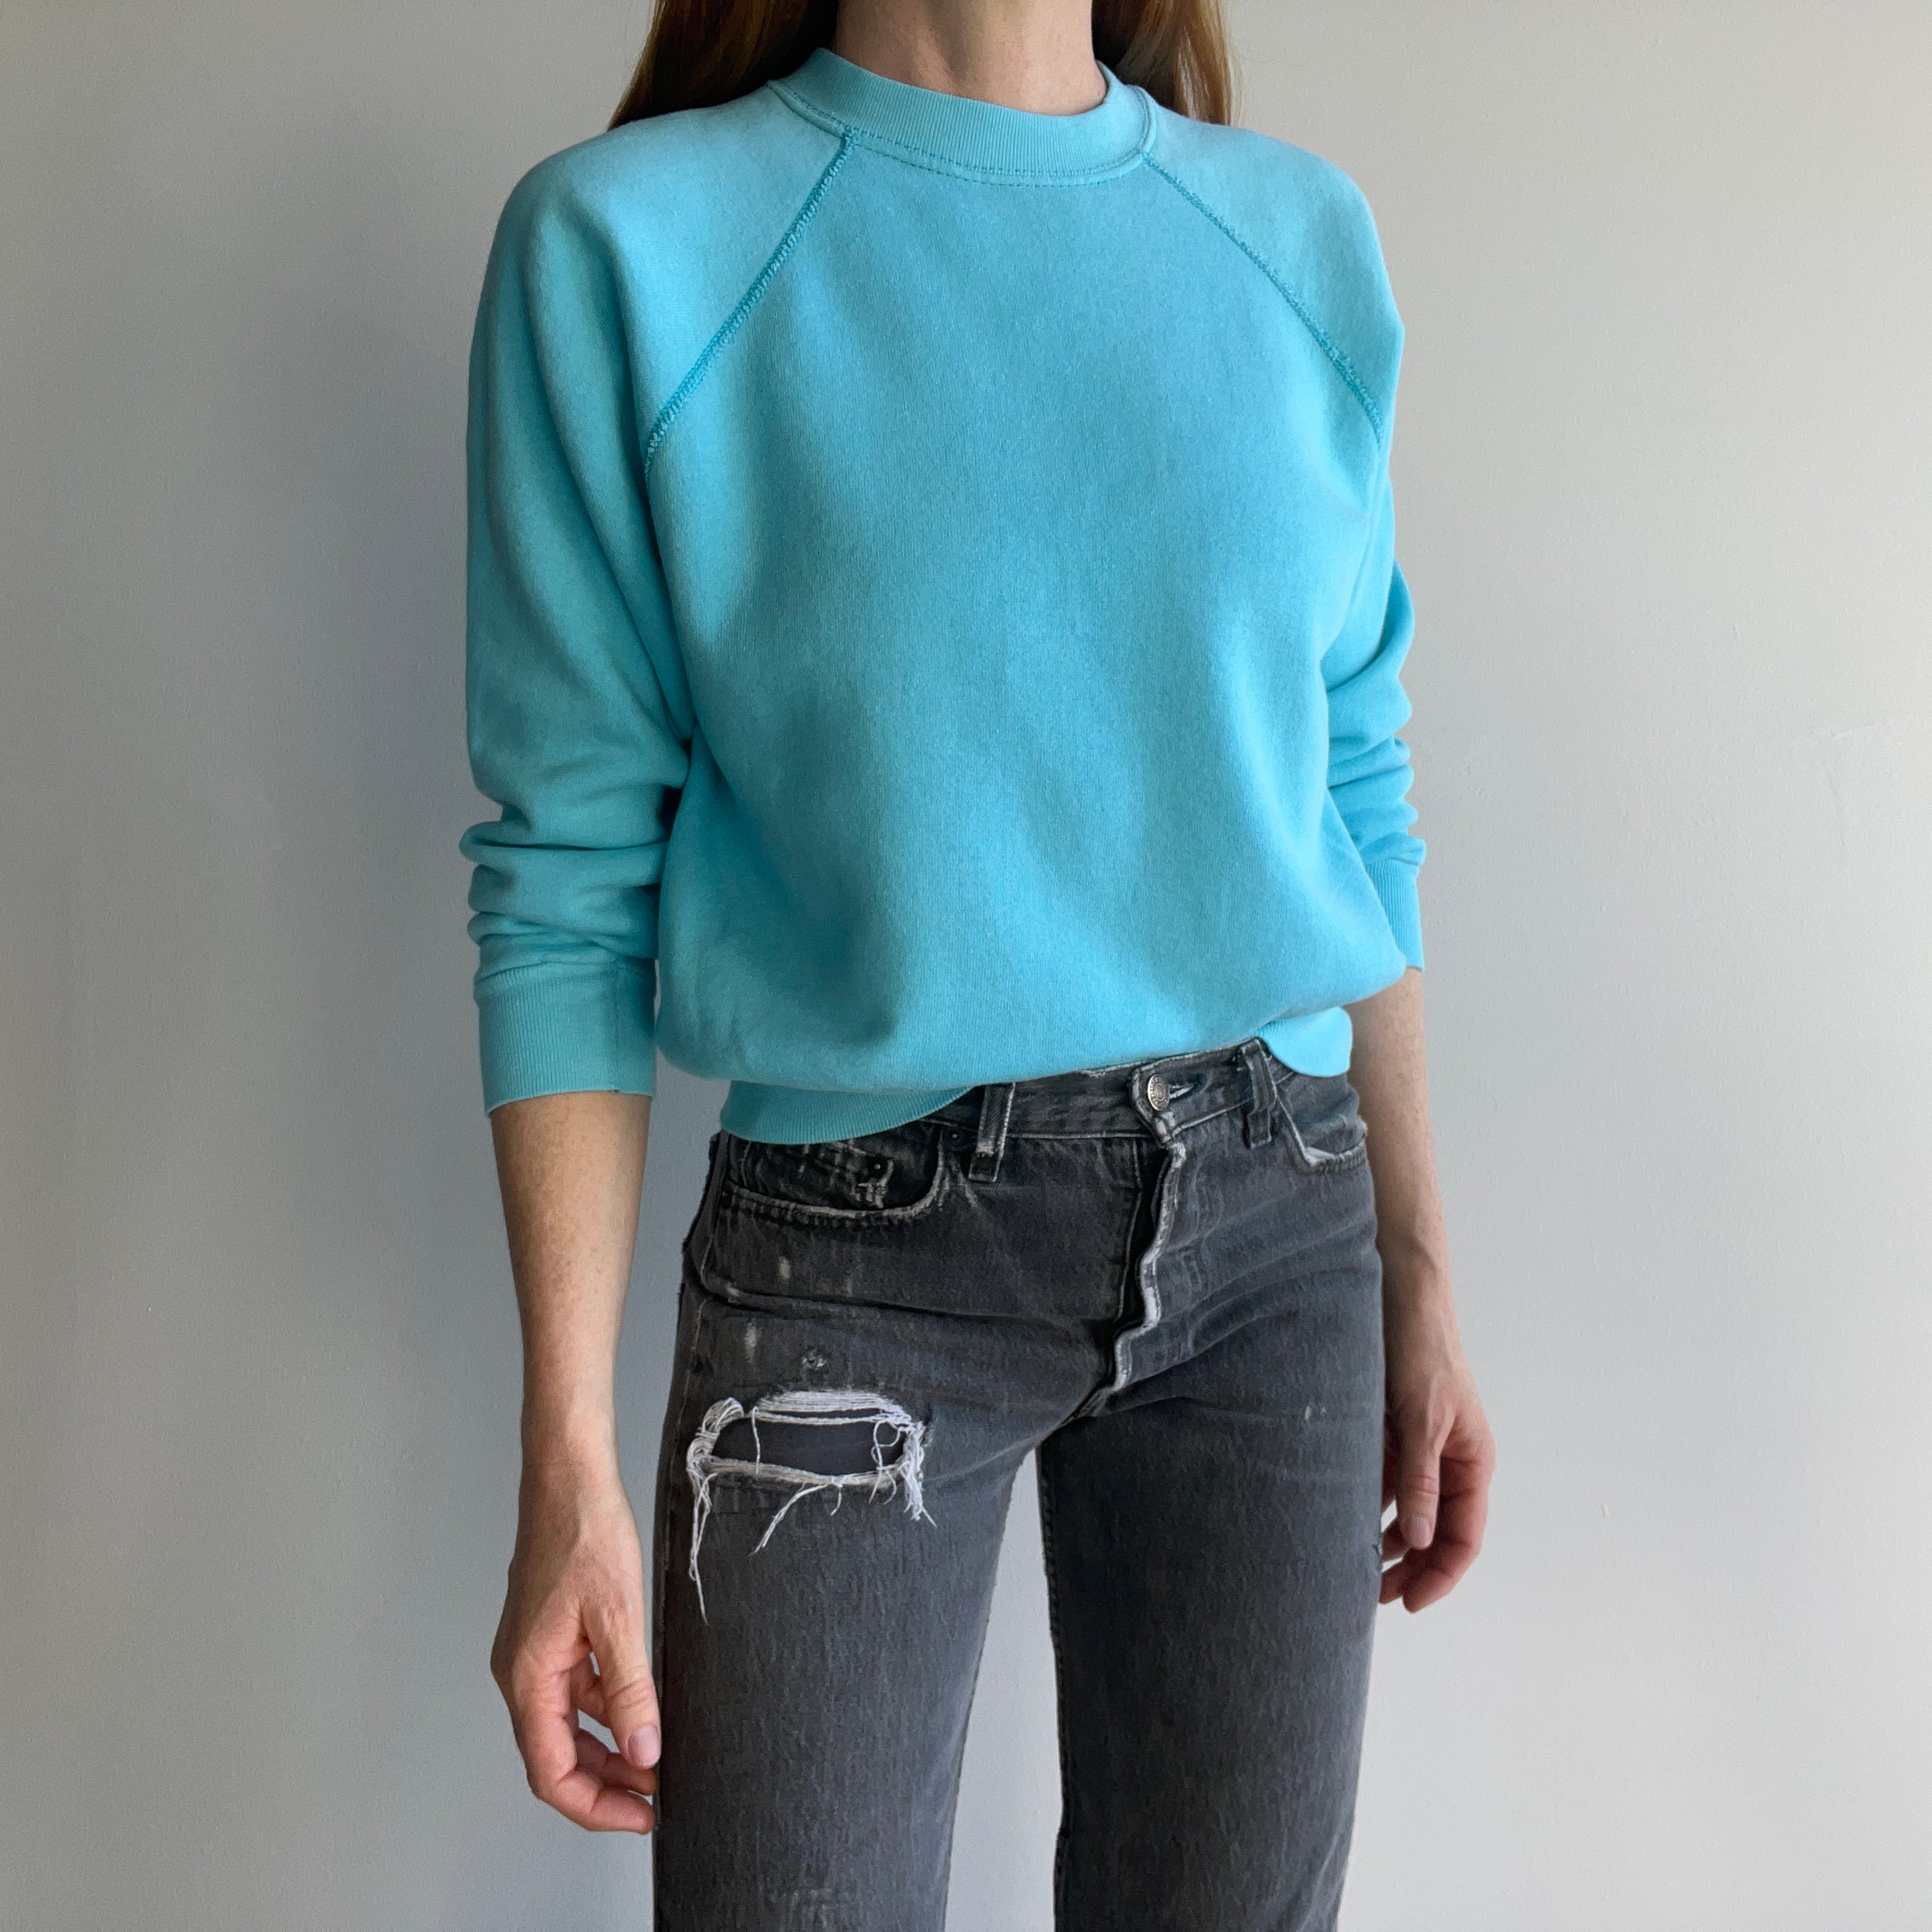 1970s Blank Aqua Sweatshirt - WOW